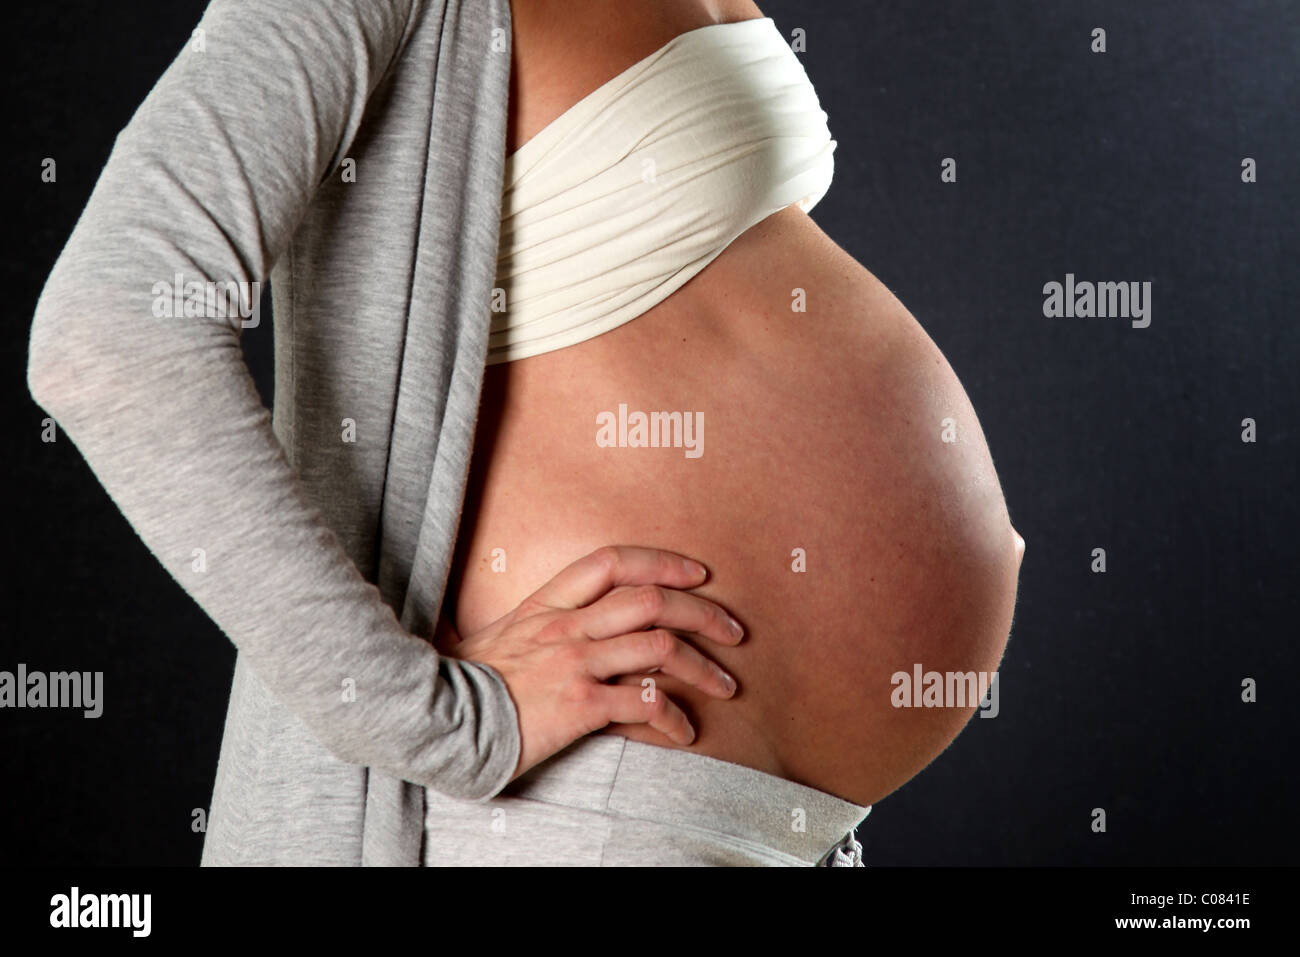 Femme enceinte avec un gros ventre, photographié en face Photo Stock - Alamy